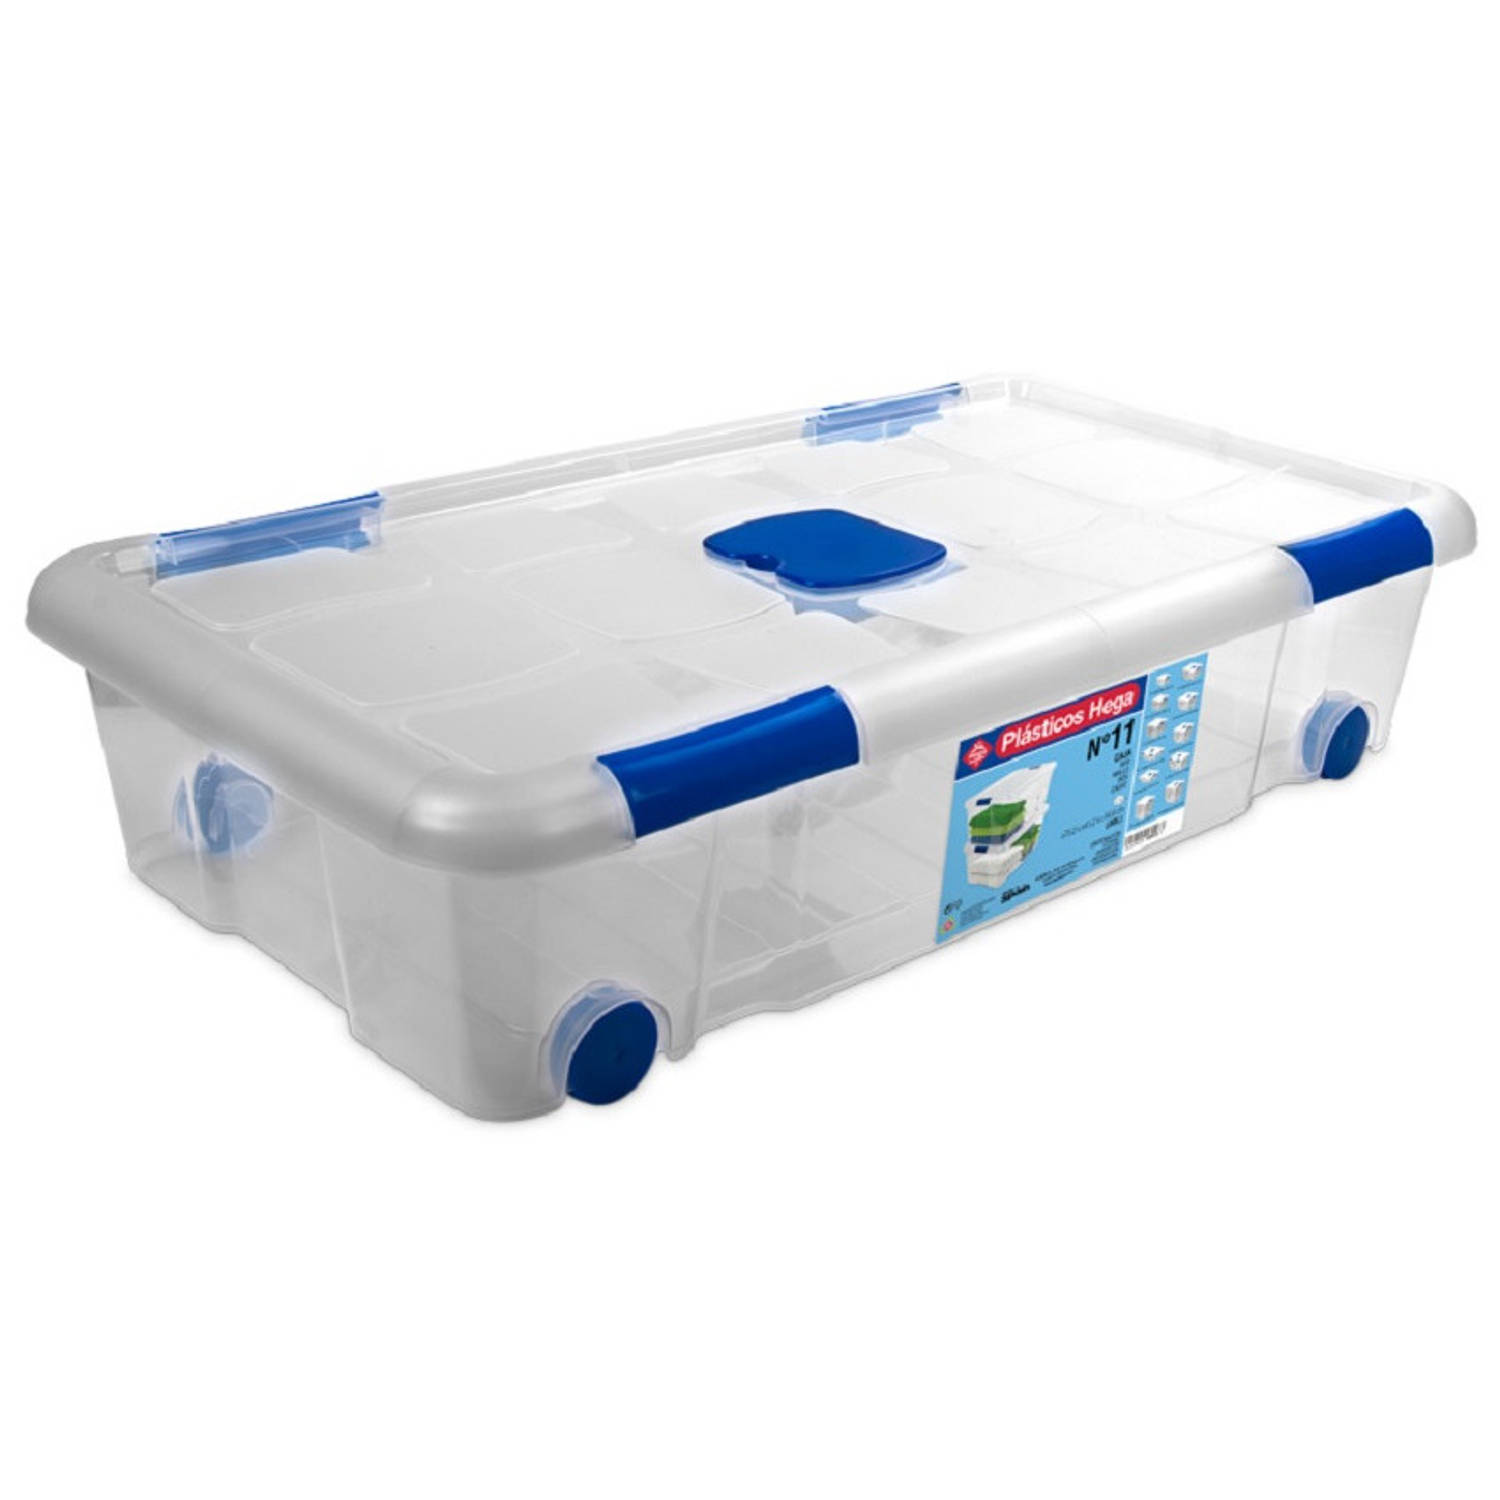 1x Opbergboxen/opbergdozen met en wieltjes 30 liter transparant/blauw - Opbergbox | Blokker